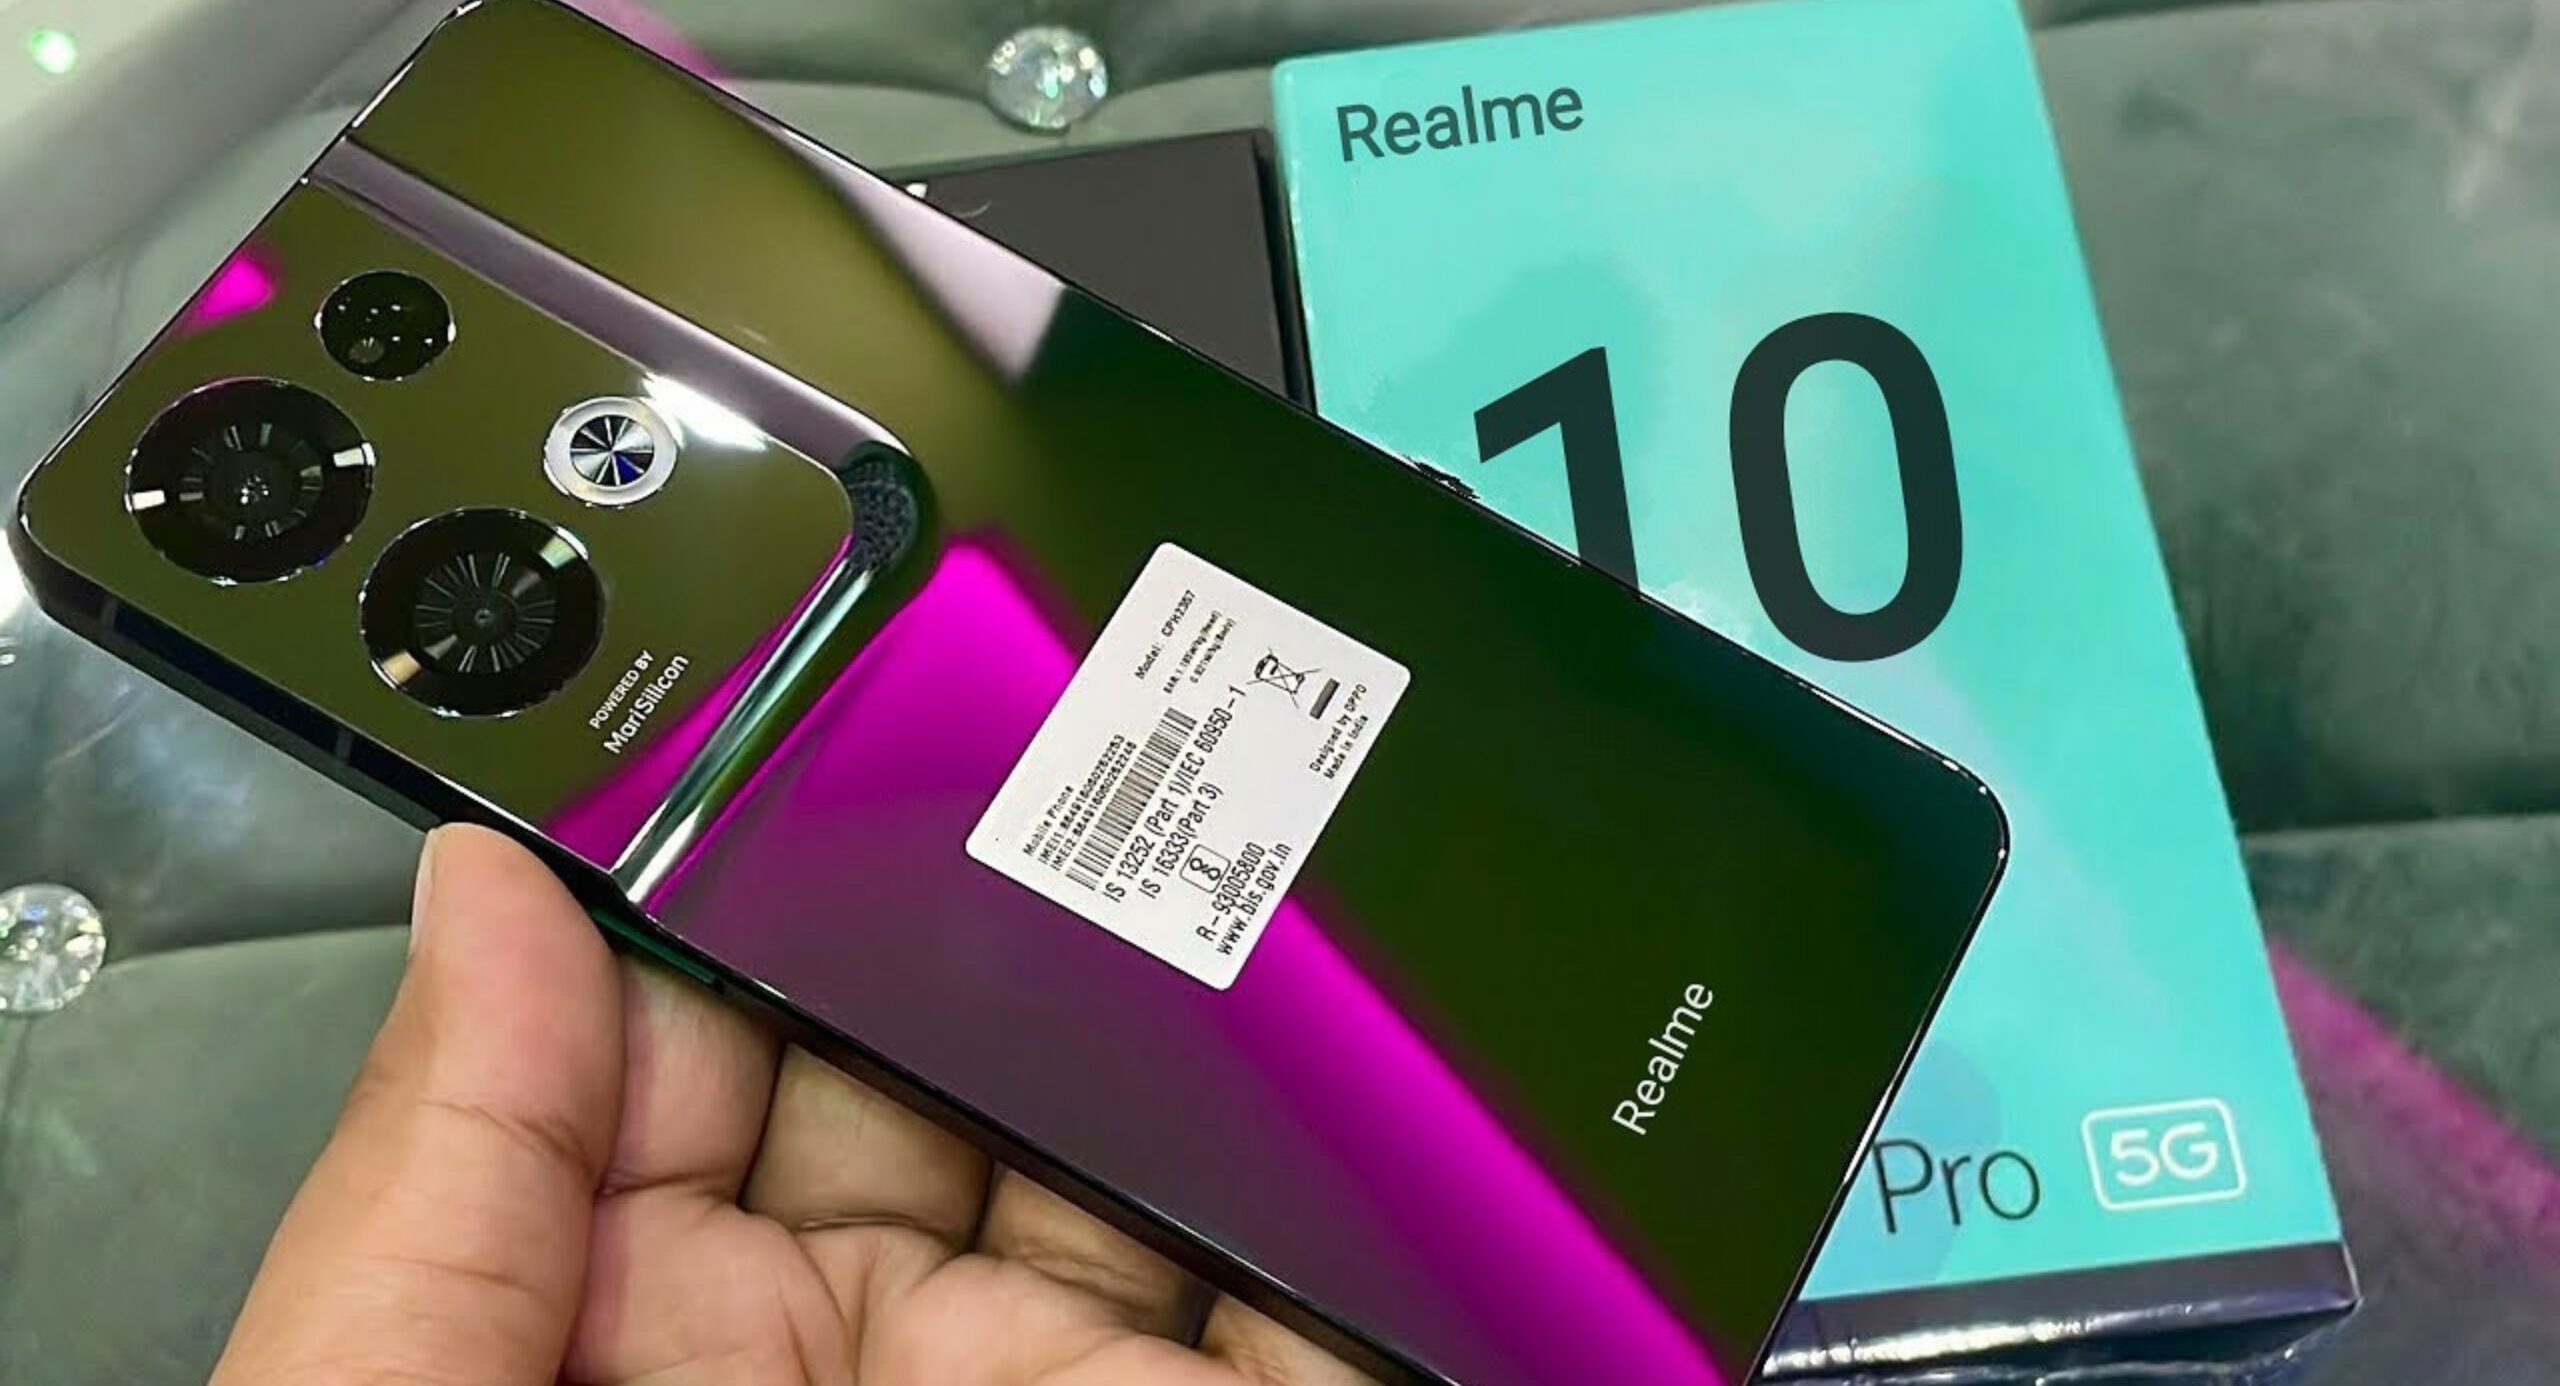 New Realme 10 Pro 5G Smartphone